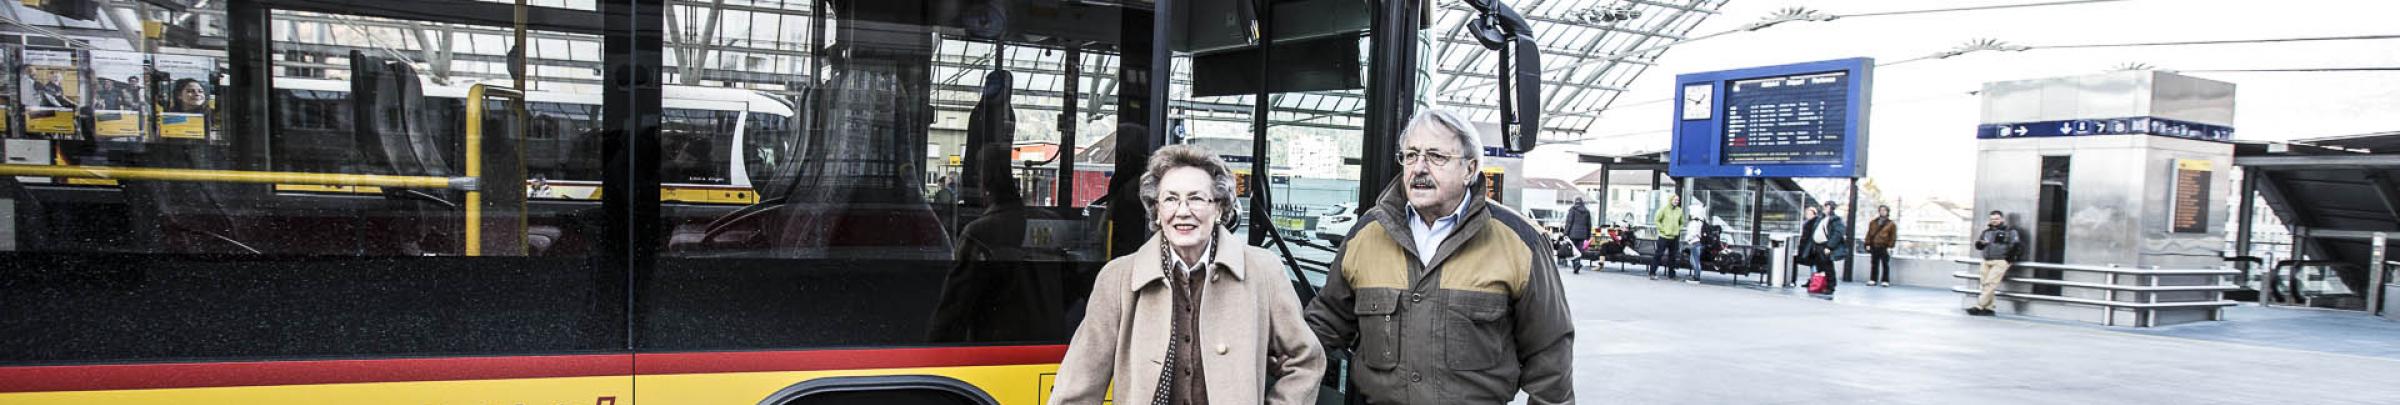 Für ältere Menschen, die nicht selber fahren können, stehen Fahrdienste zur Verfügung.